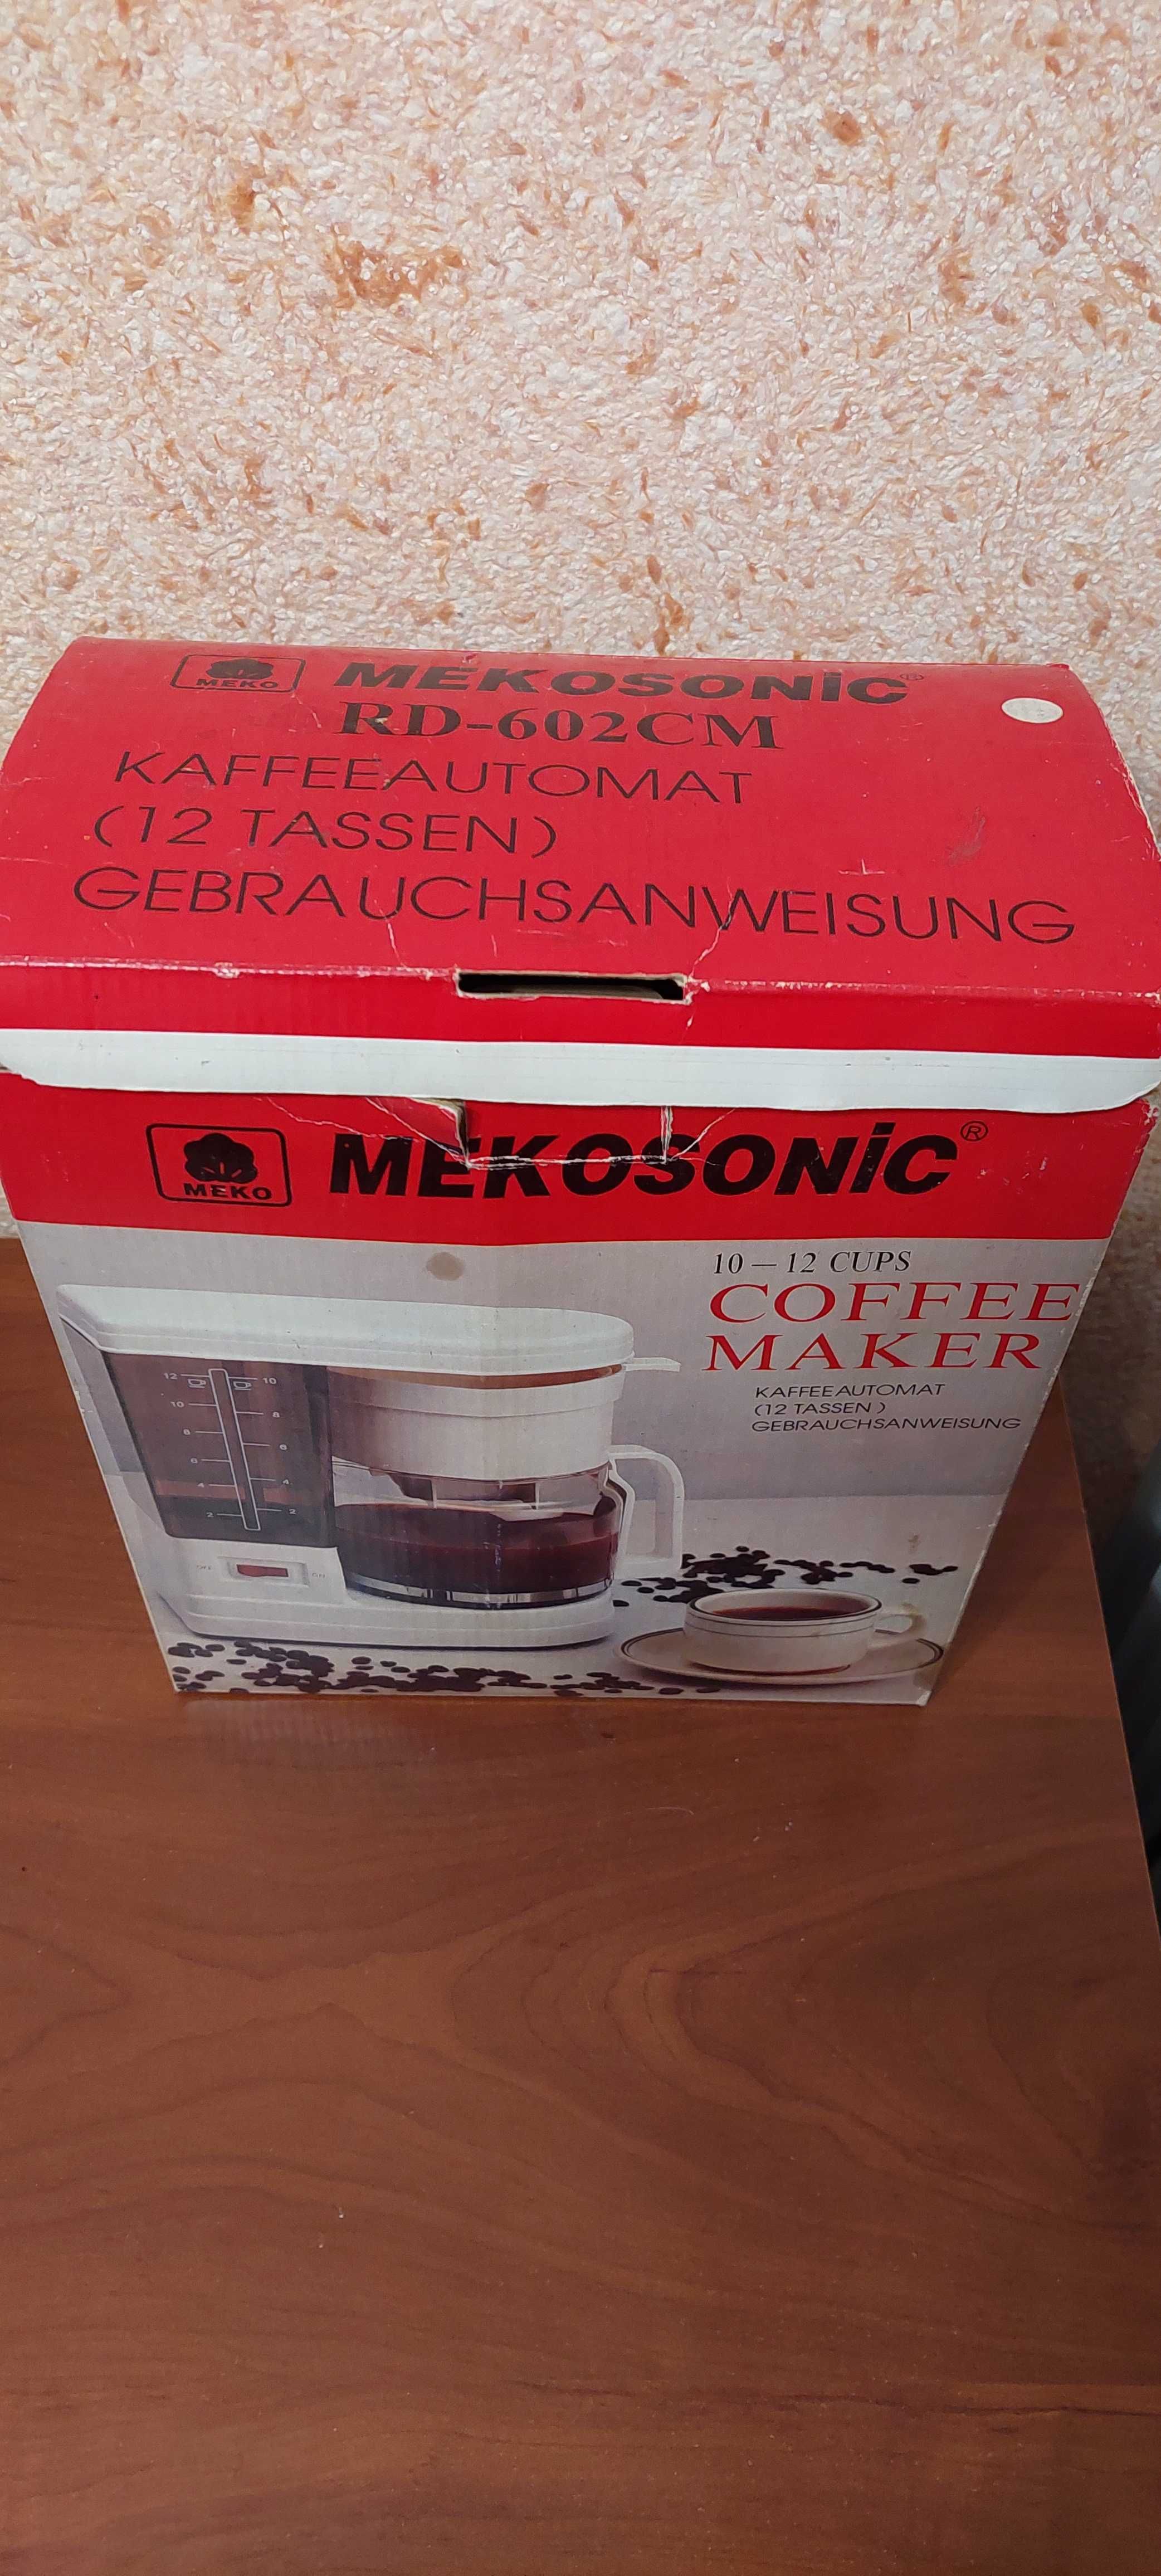 Нова кавоварка крапельного типу фірма Vitek Австрія